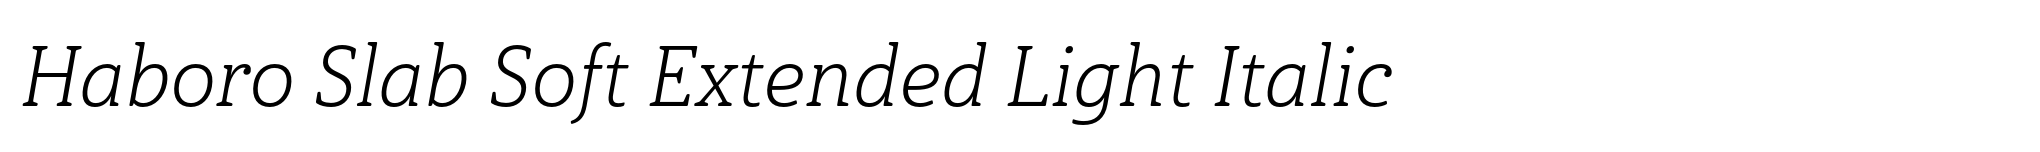 Haboro Slab Soft Extended Light Italic image